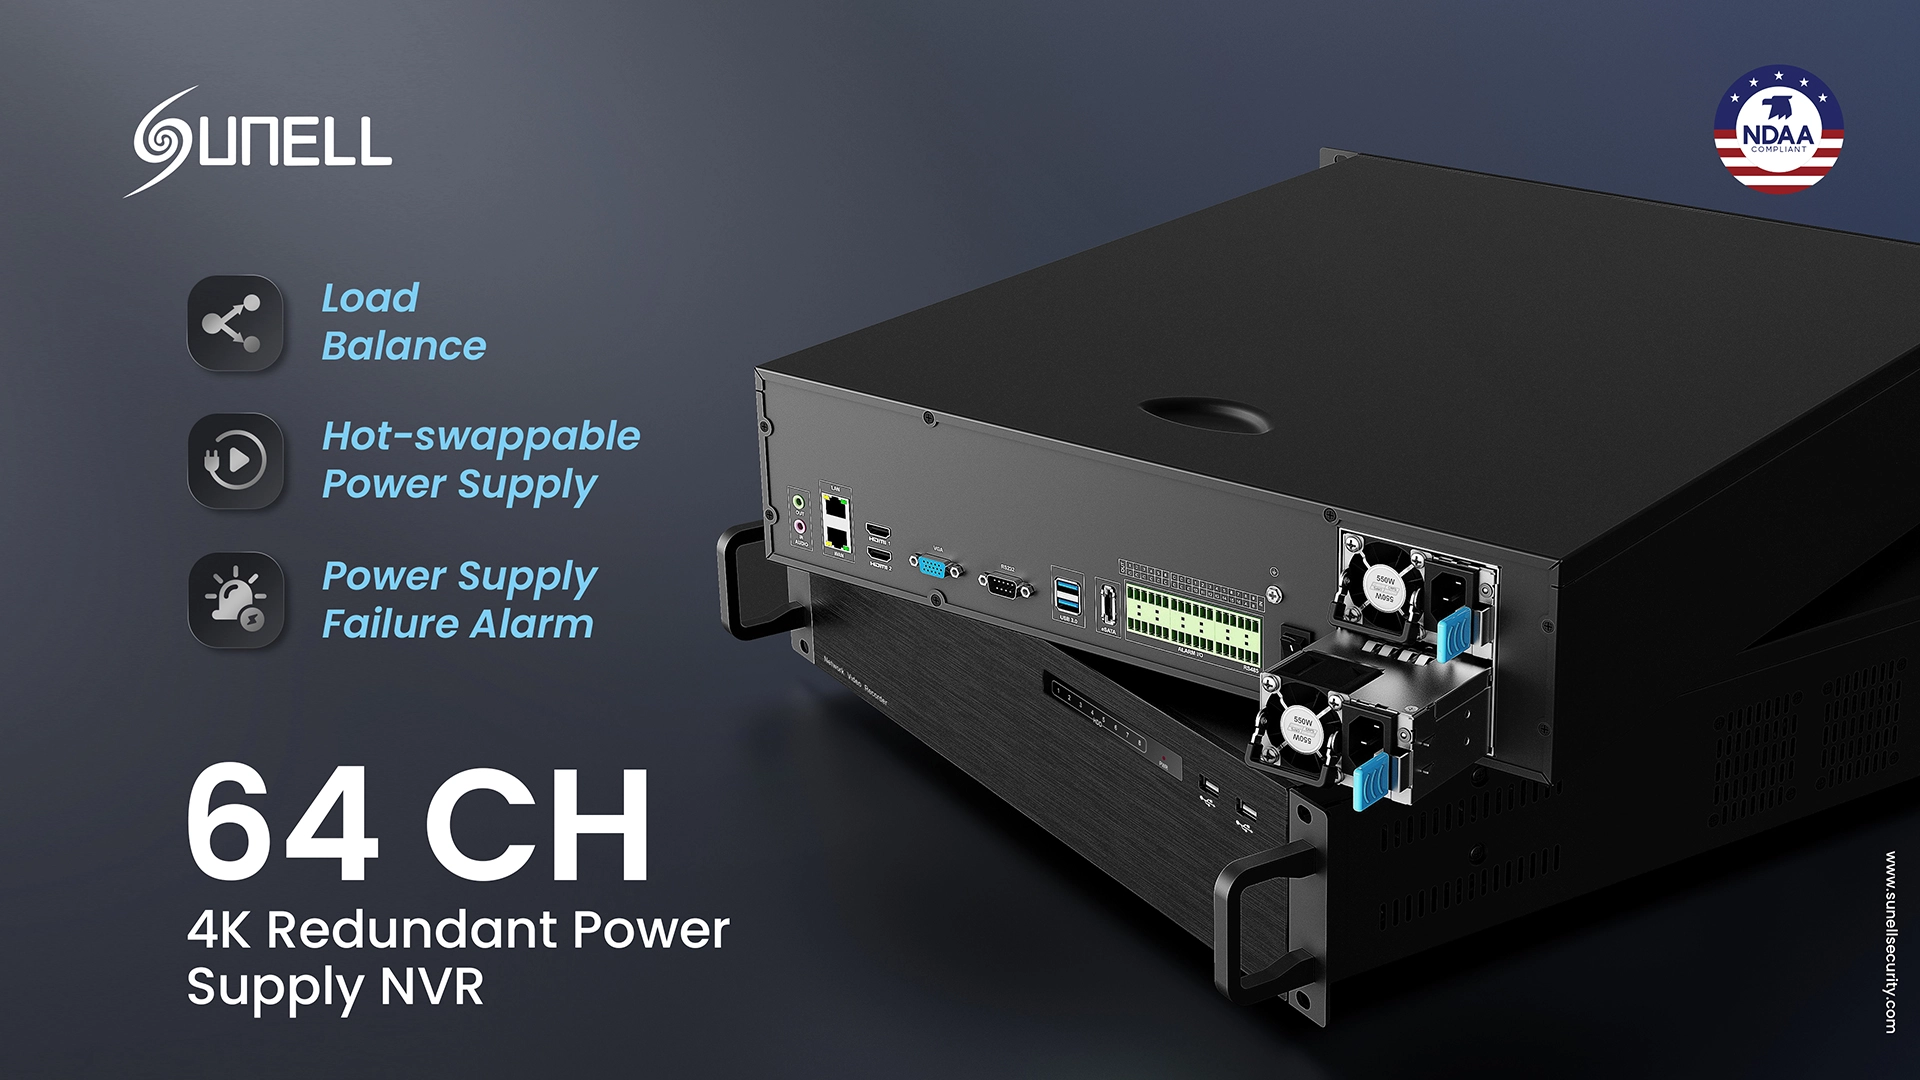 Sunell bringt den neuen redundanten 4K-Strom-NVR mit 64 Kanälen auf den Markt, um eine stabile Überwachung zu gewährleisten